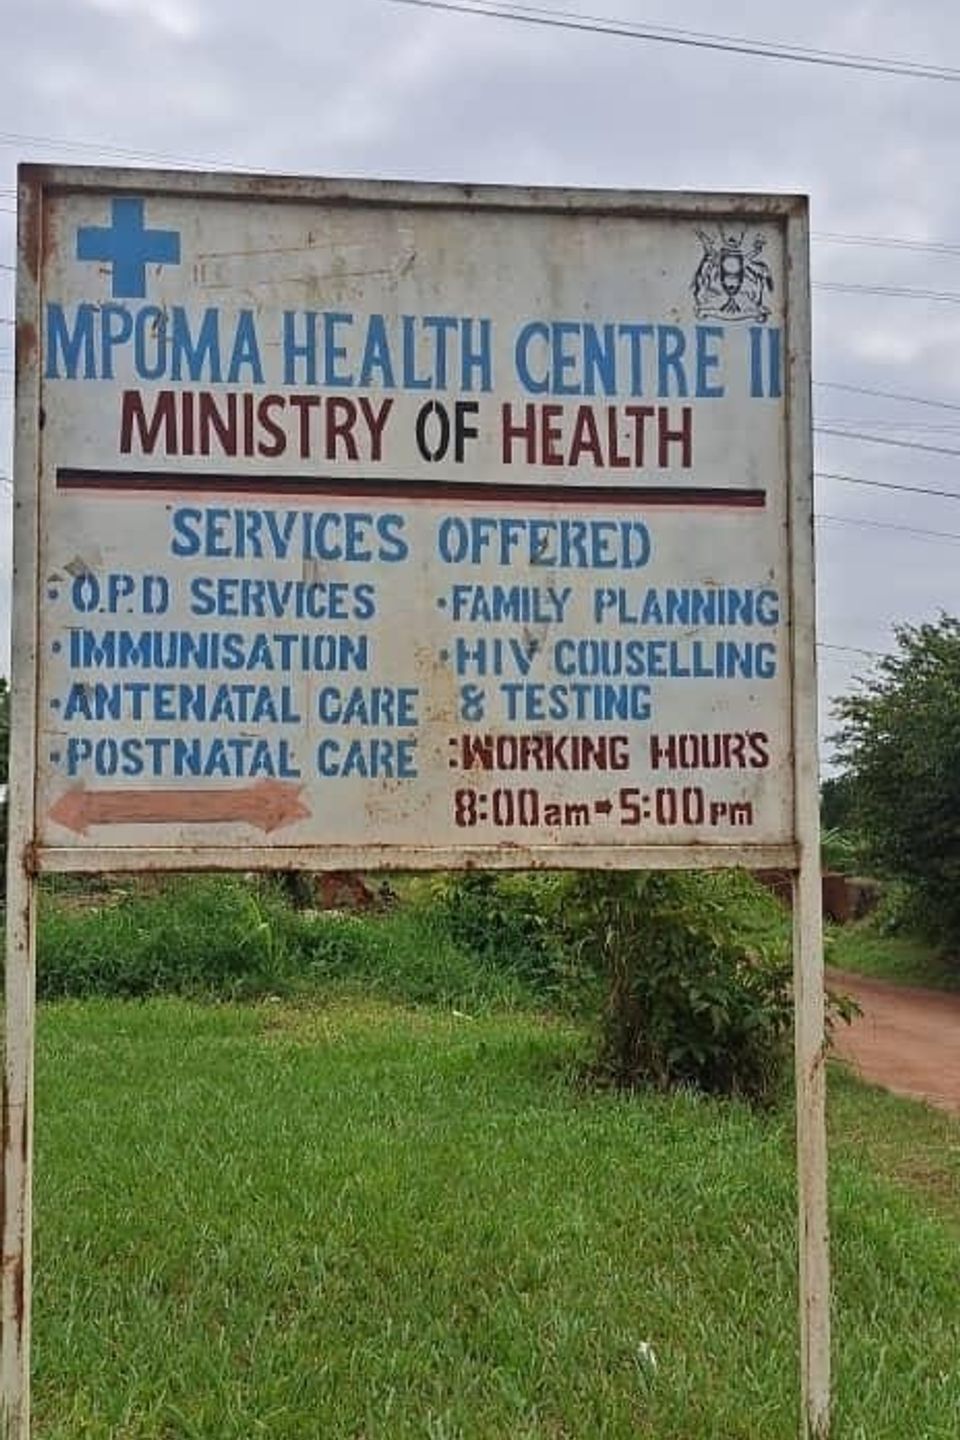 Mpoma health center